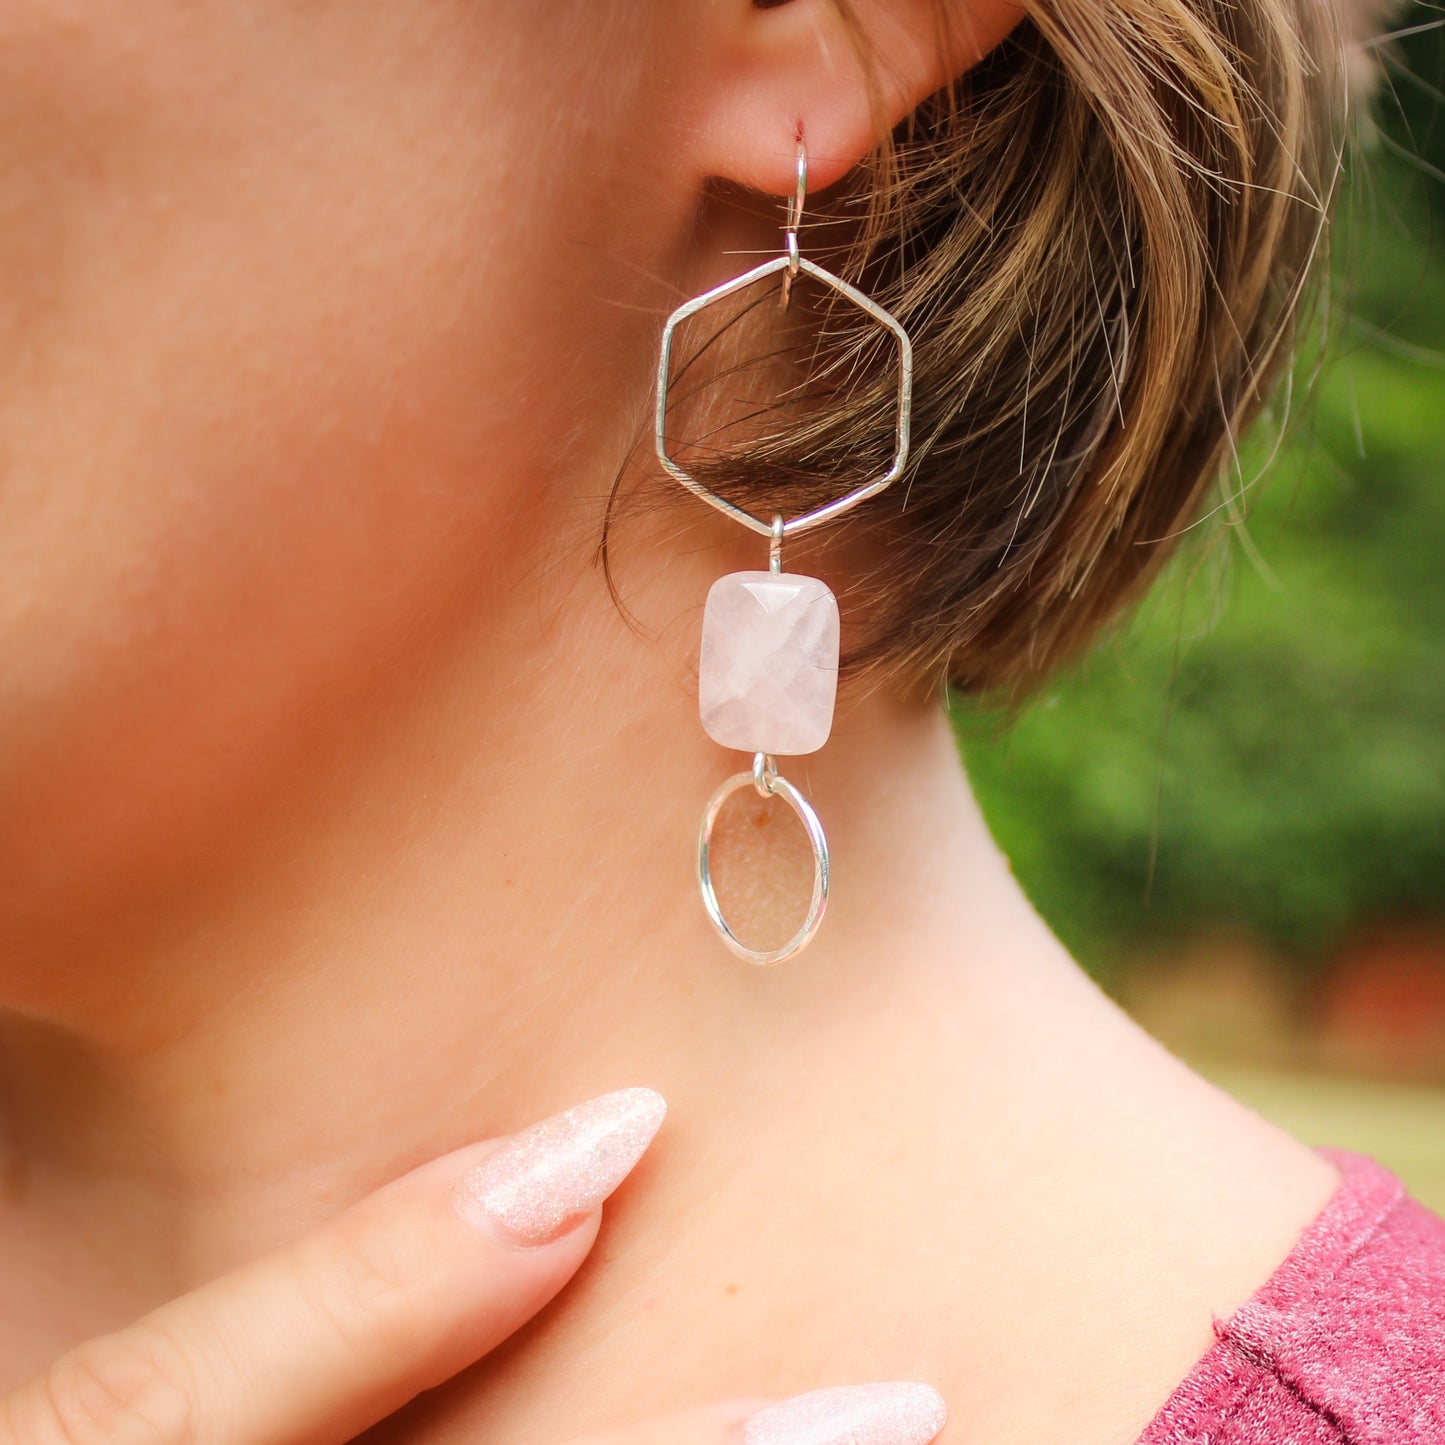 Gold Rose Quartz Earrings // Long Geometric Minimalist Dangle Earrings Waterproof and Hypoallergenic // Hexagon Statement Pink Earrings